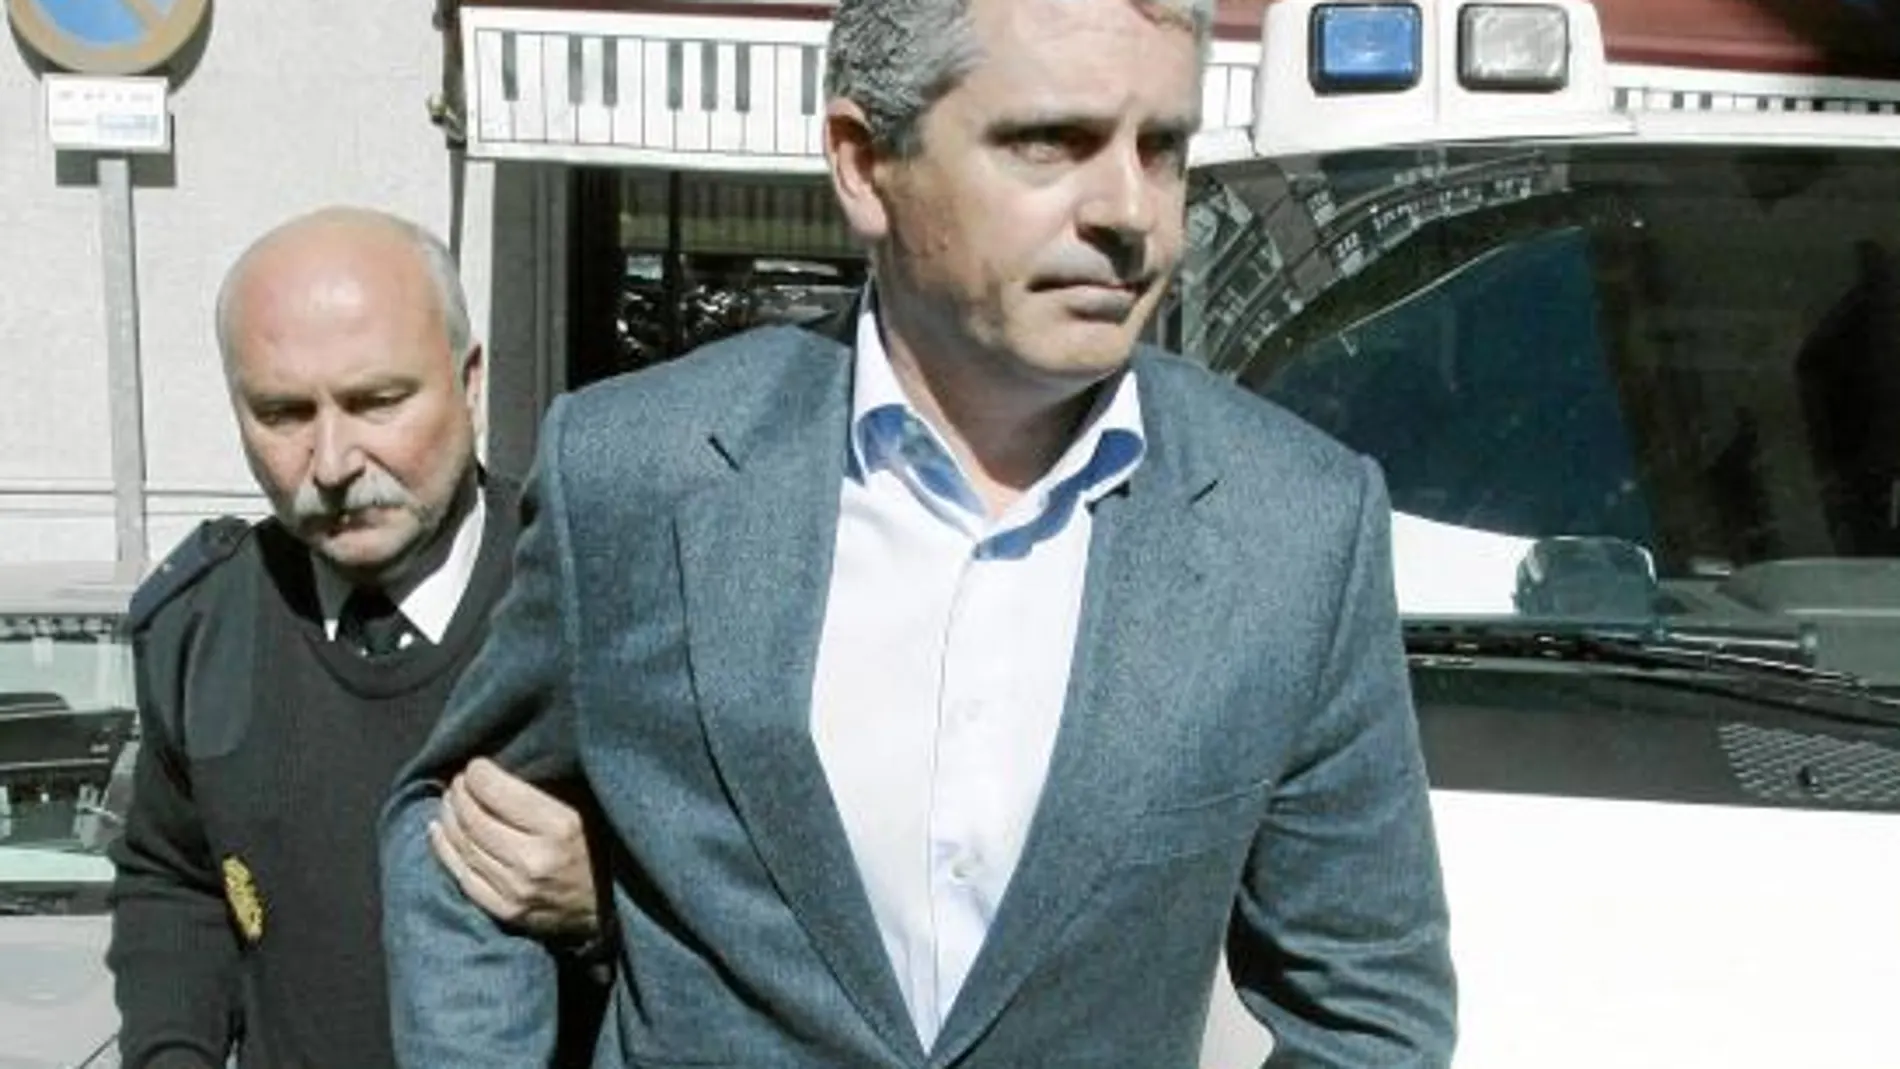 El contable de la trama declaró en Madrid, por un exhorto del juez Flors, y exculpó a Camps y Costa